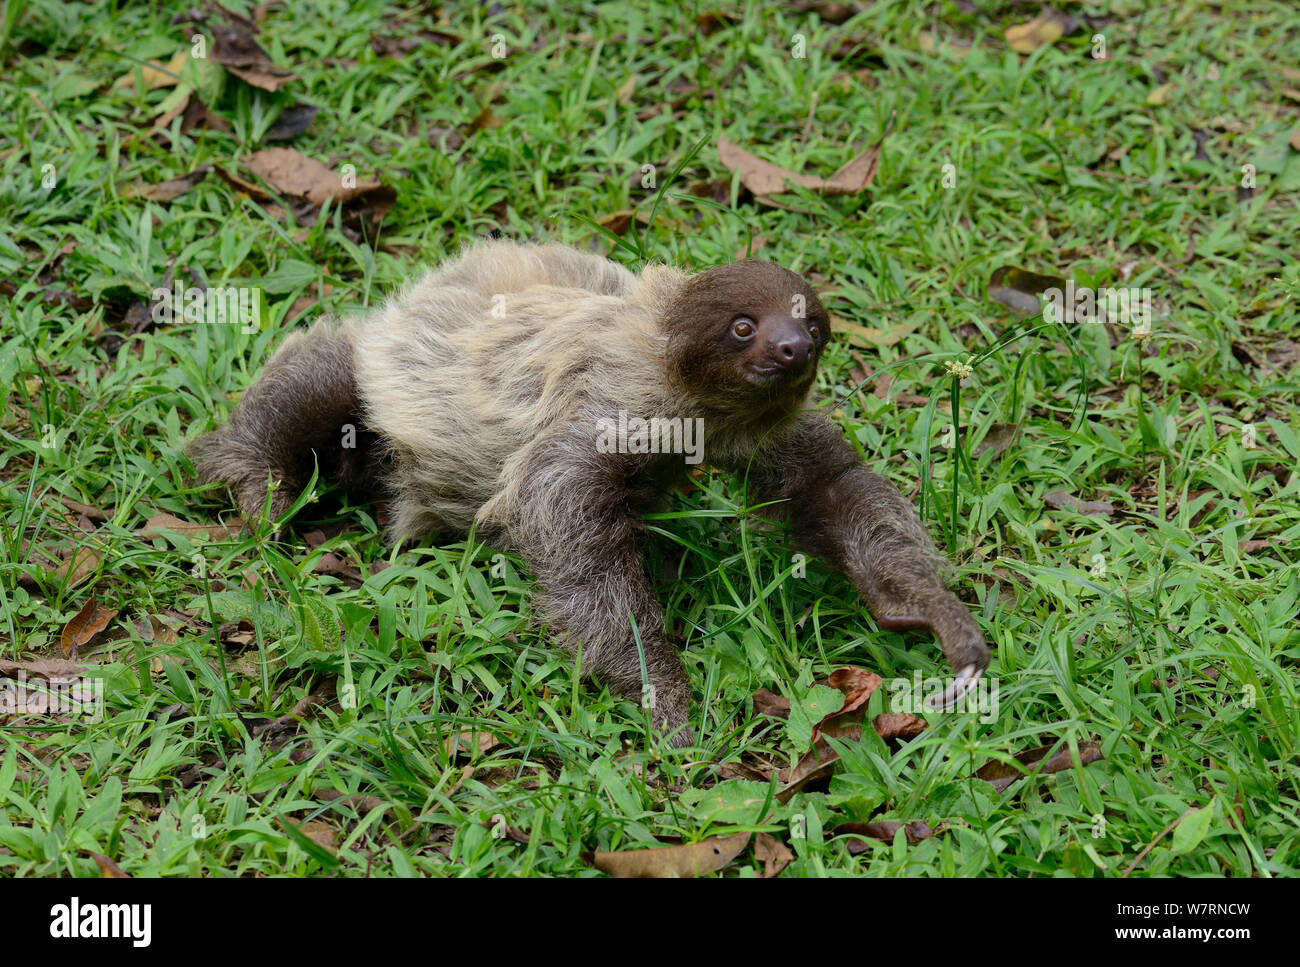 Unau / two-toed sloth (Choloepus didactylus) on ground, French Guiana Stock Photo